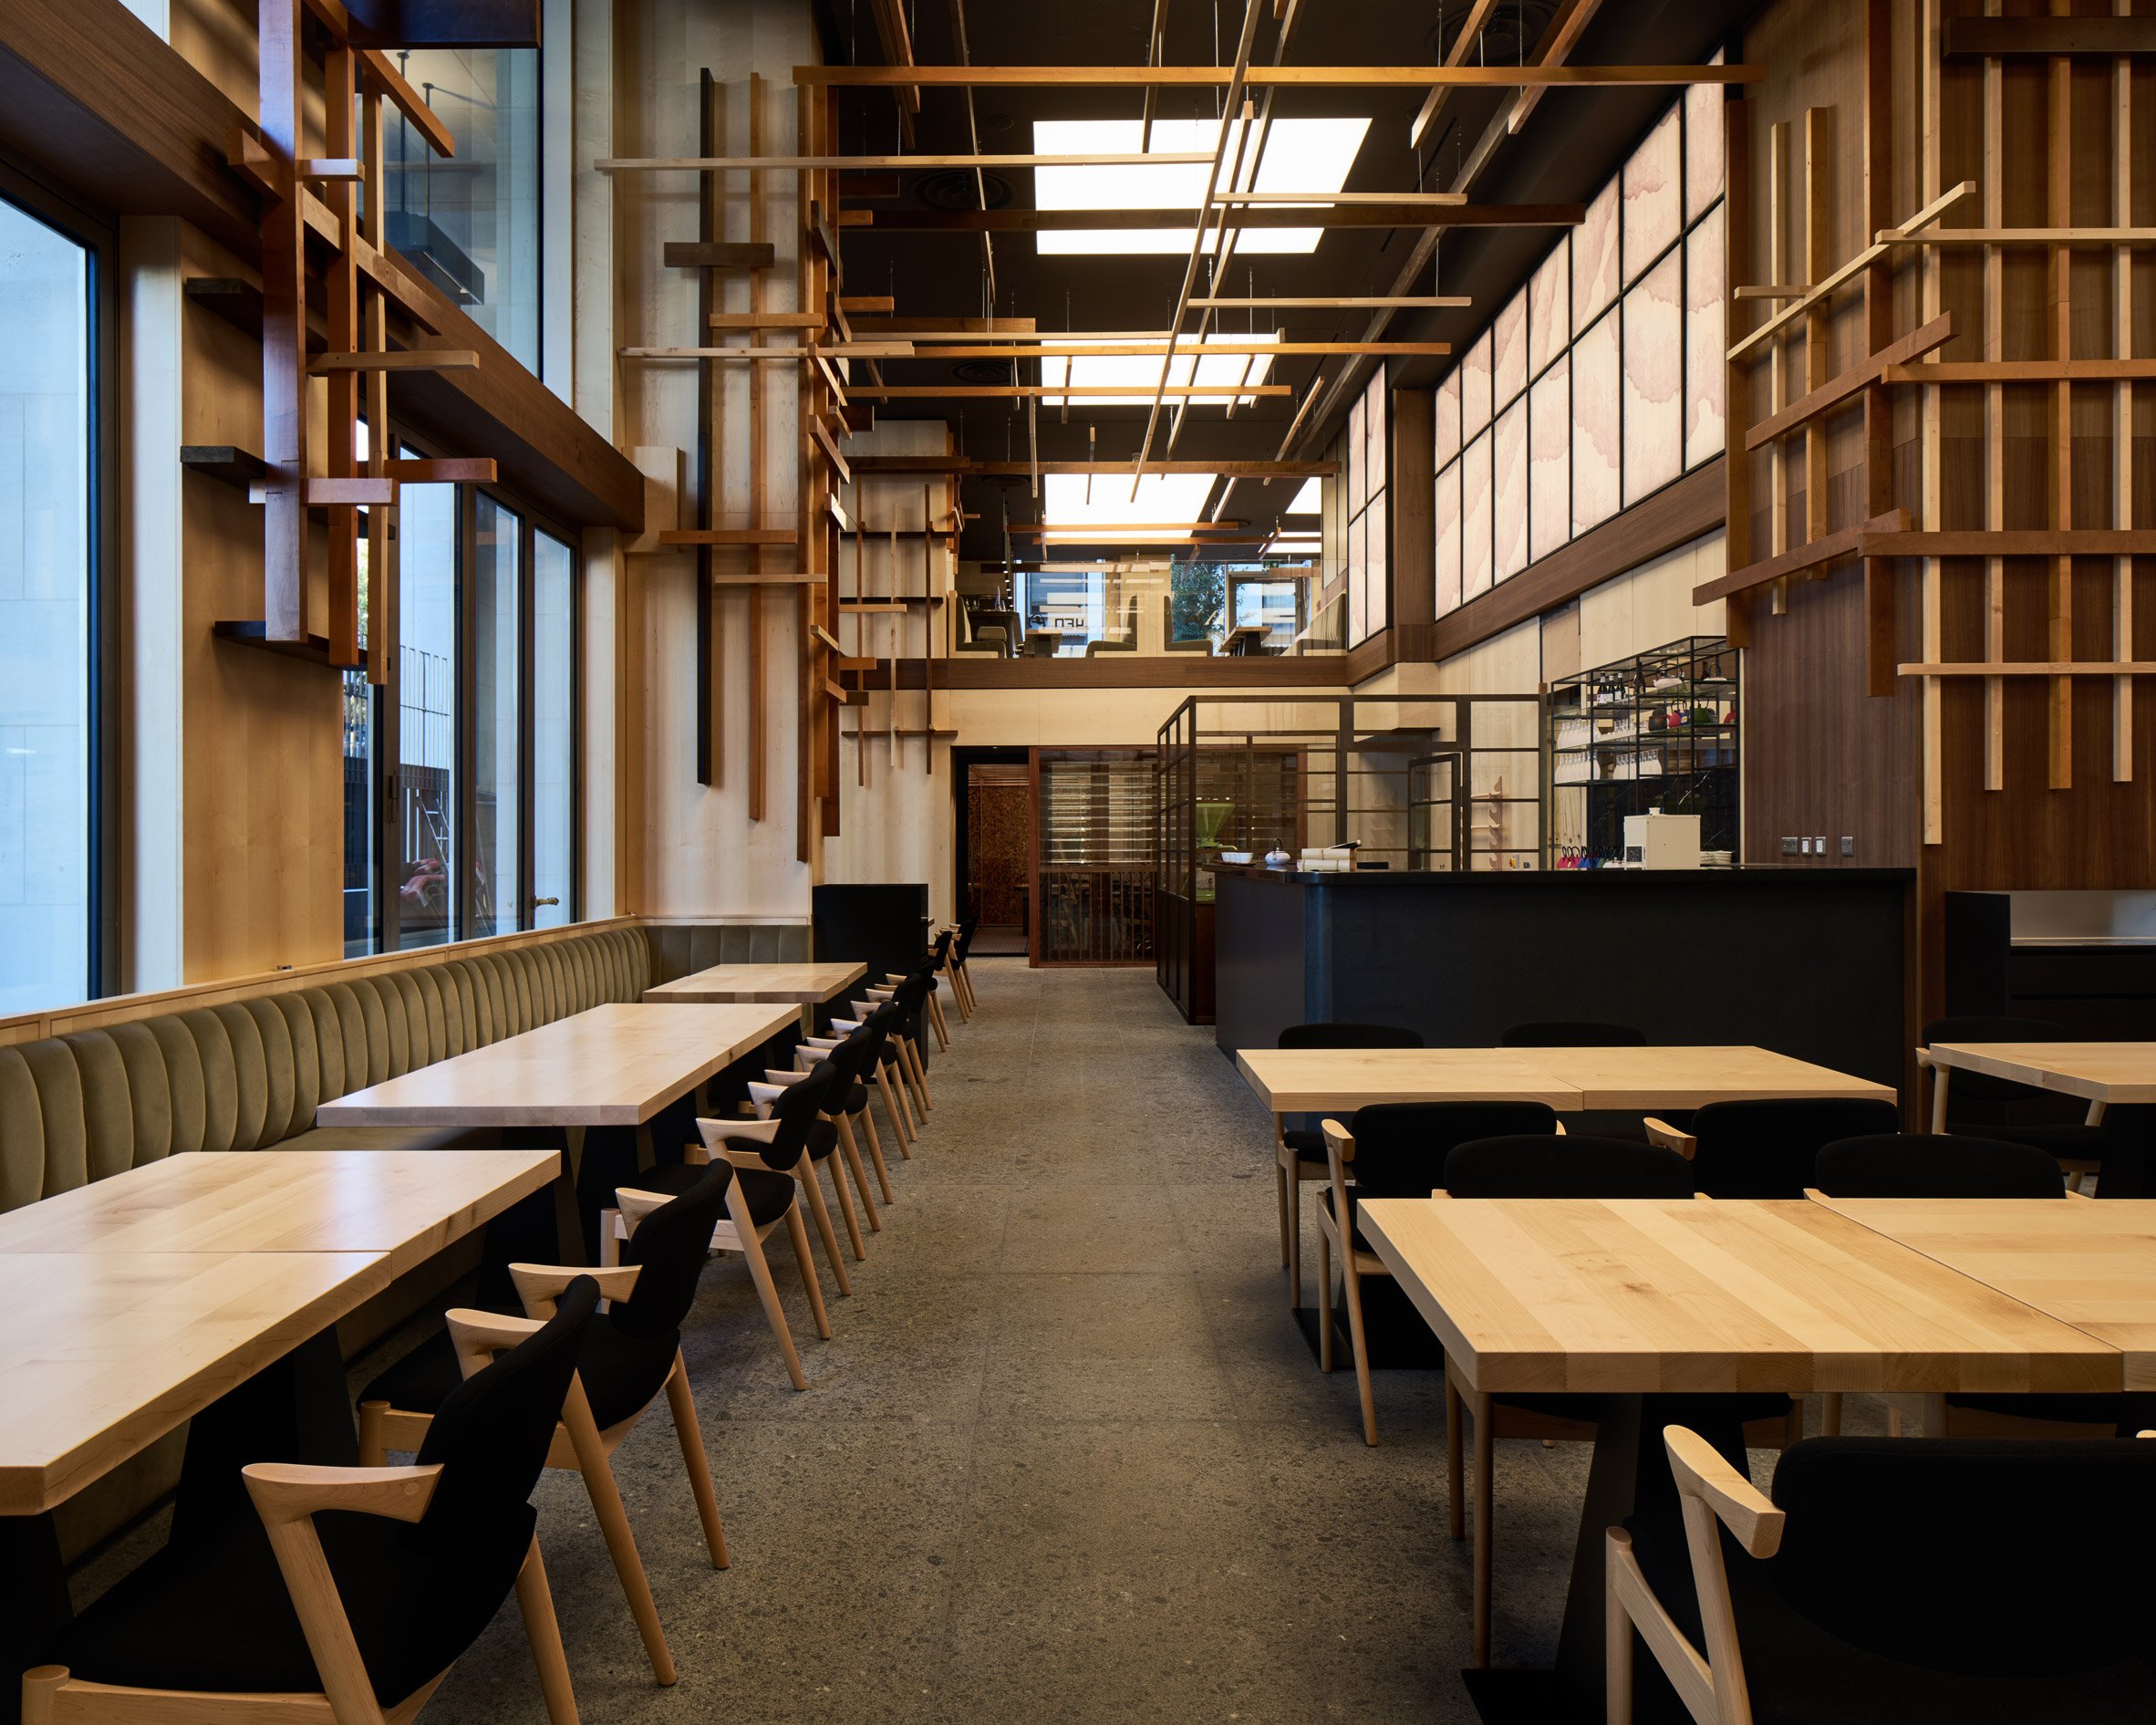 Yen restaurant by Sybarite Architecture